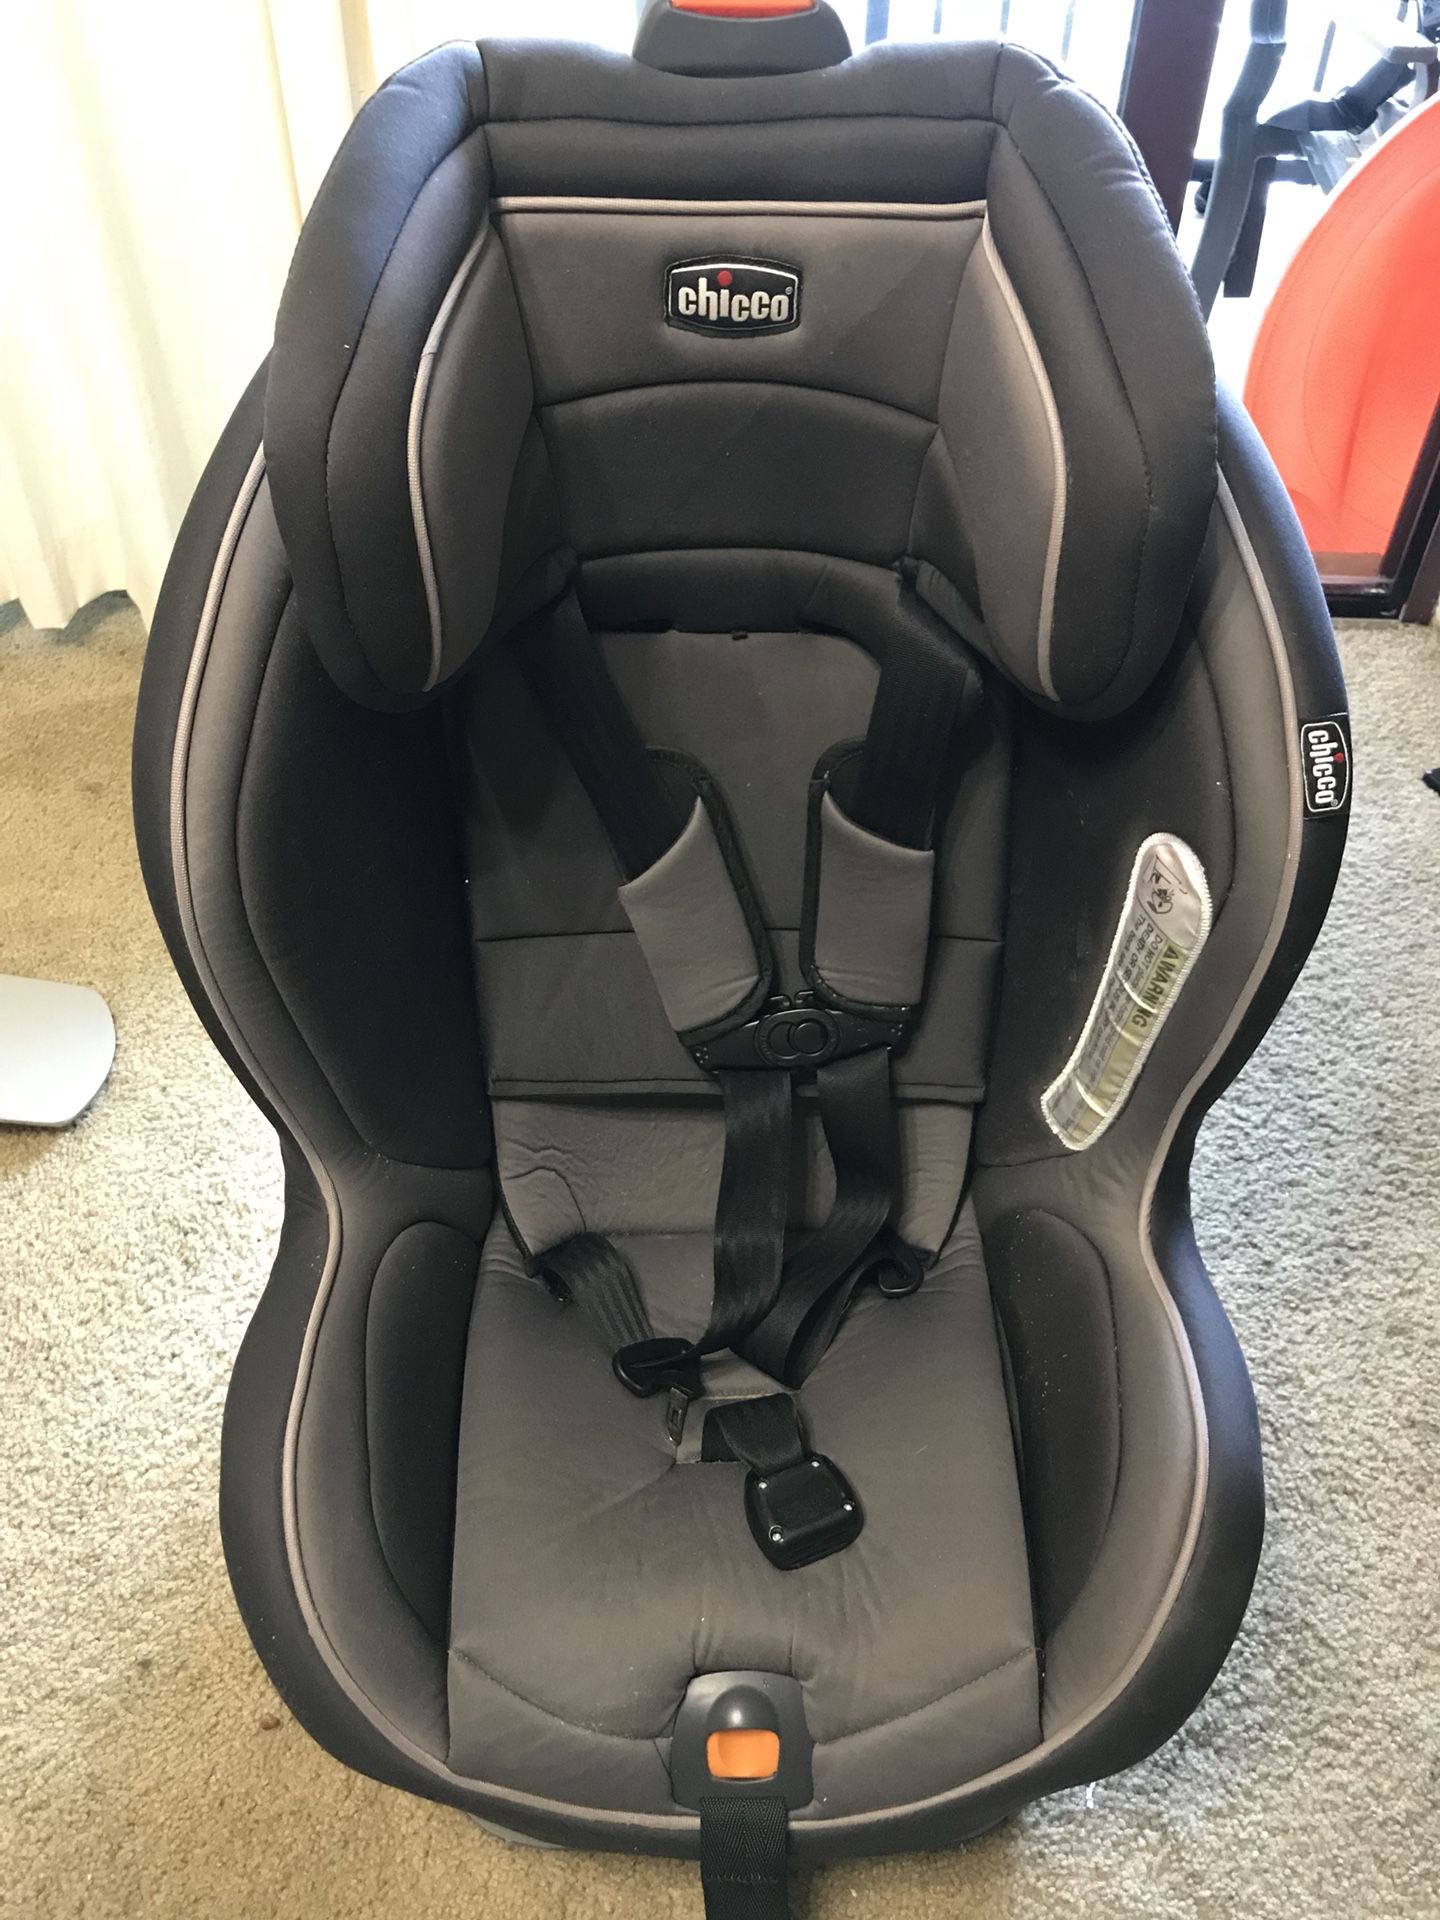 Child car seat(chico)